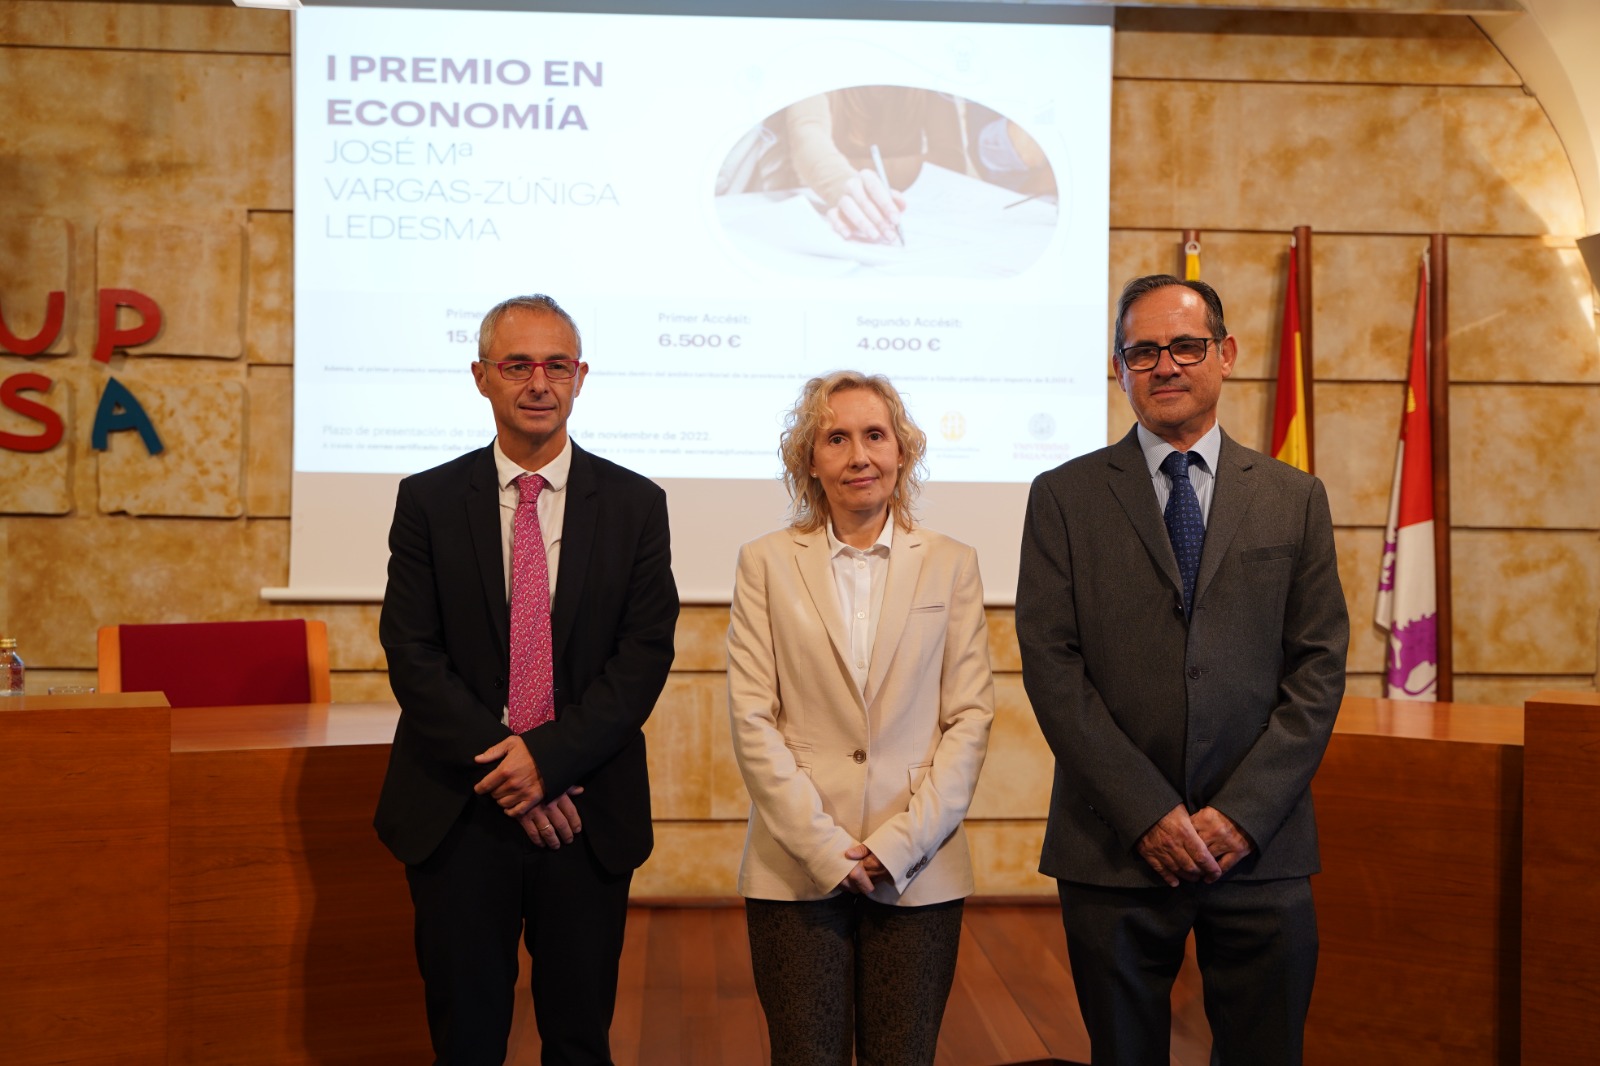 La Fundación Vargas-Zúñiga, la Universidad de Salamanca y la Universidad Pontificia convocan el I Premio en Economía José María Vargas-Zúñiga Ledesma